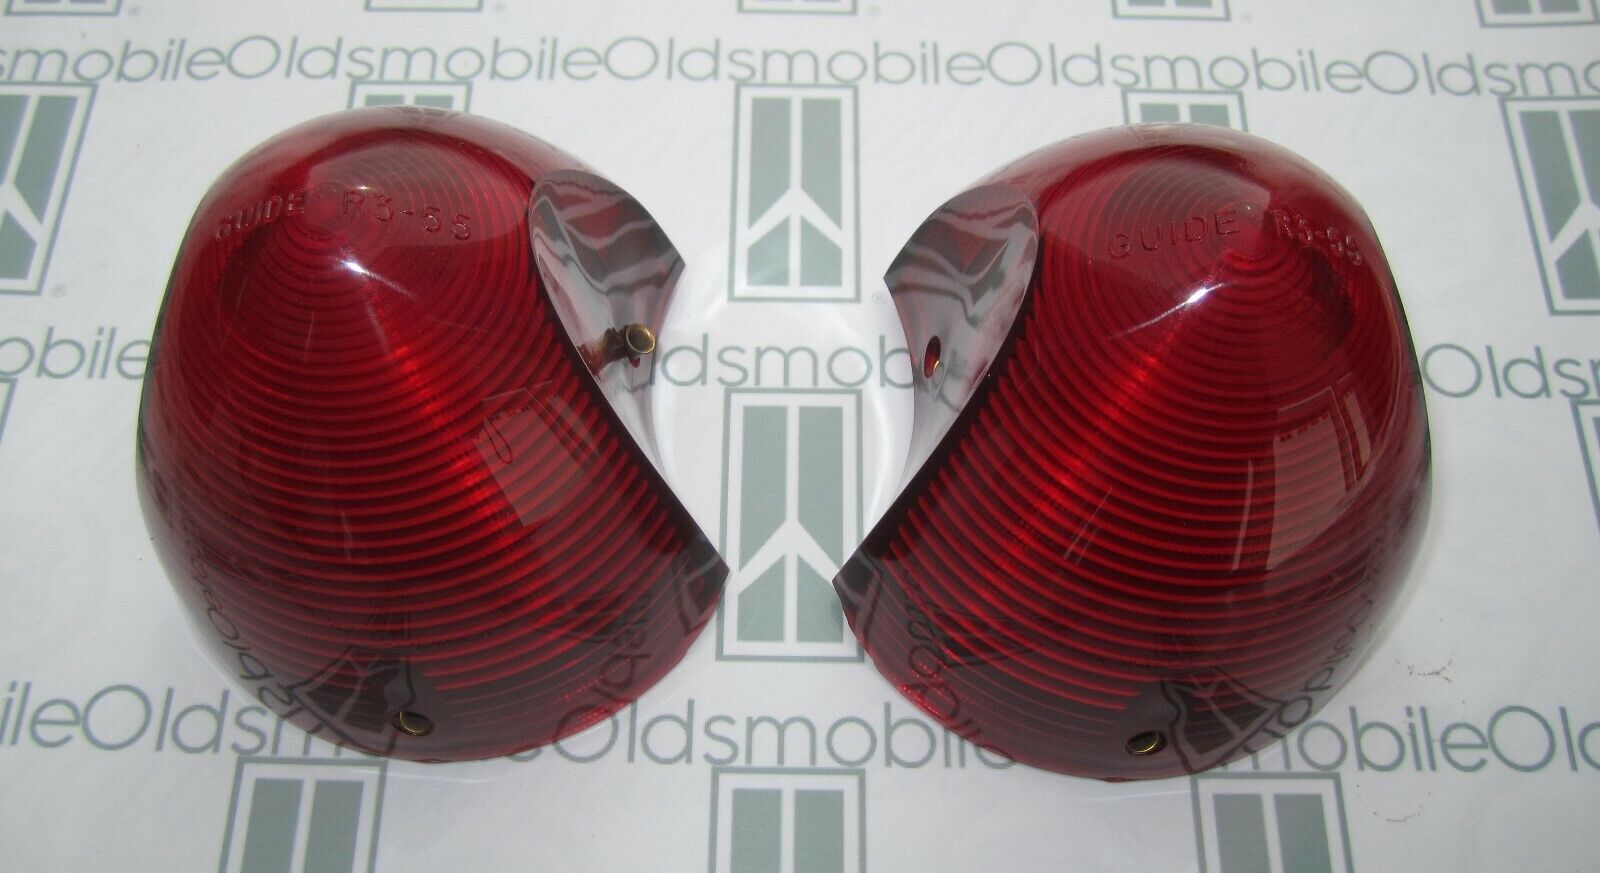 1955 Oldsmobile 88 Tail Light Lenses. Pair. Correct Guide R3-55 Imprint. (2) New